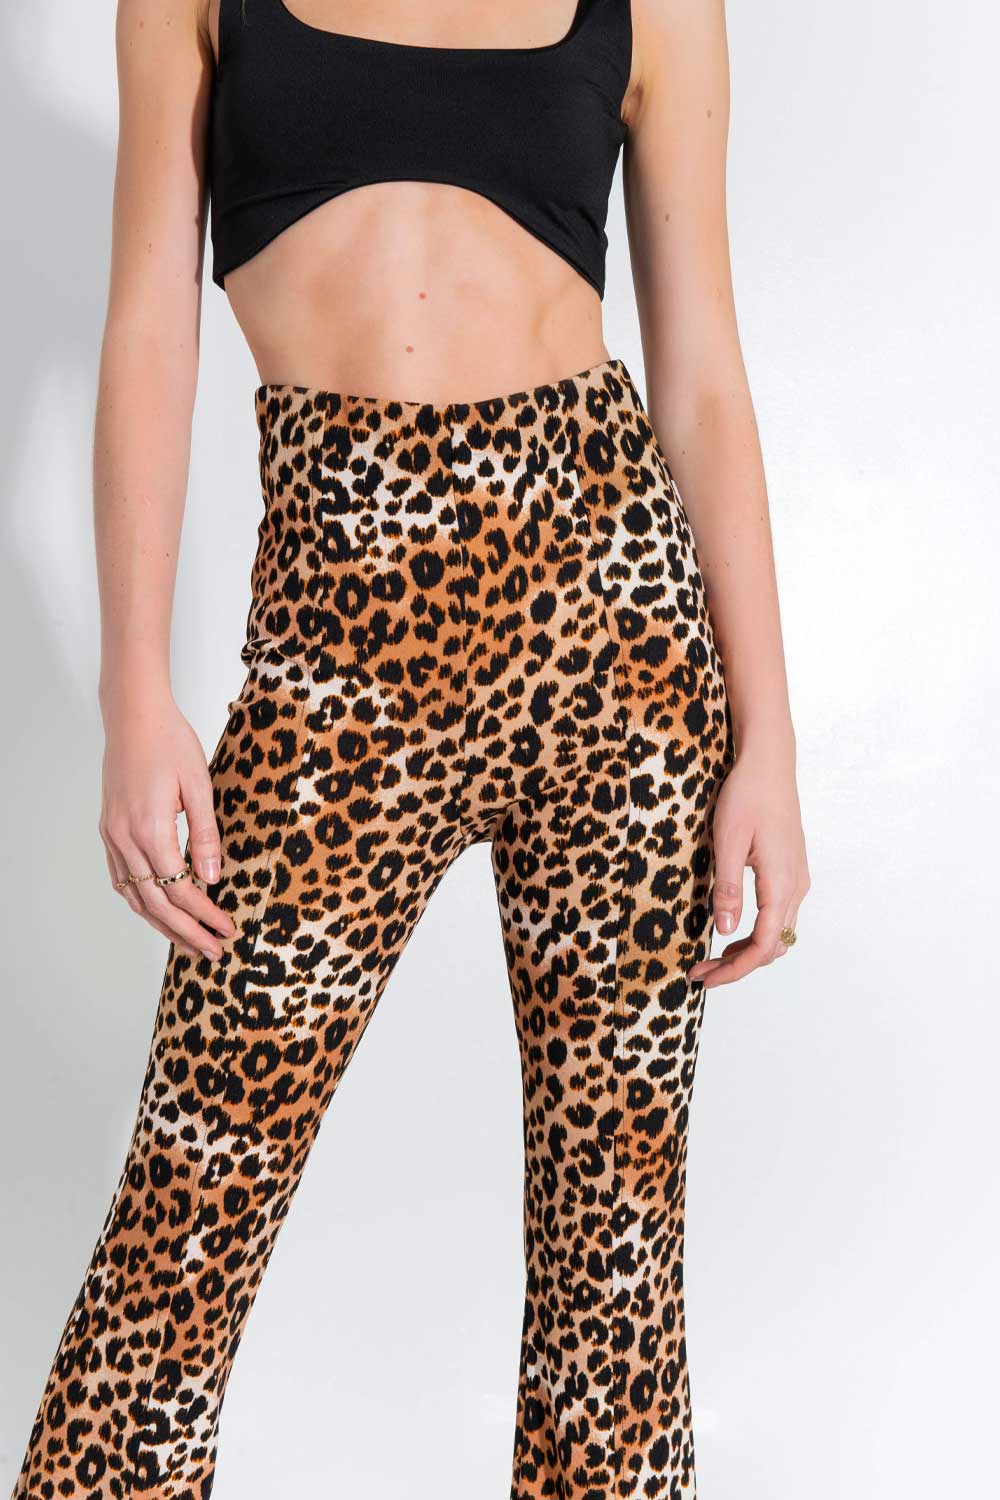 Legging de estampado leopardo, fit flare, cintura alta elástica y raya frontal con aberturas en bajo.